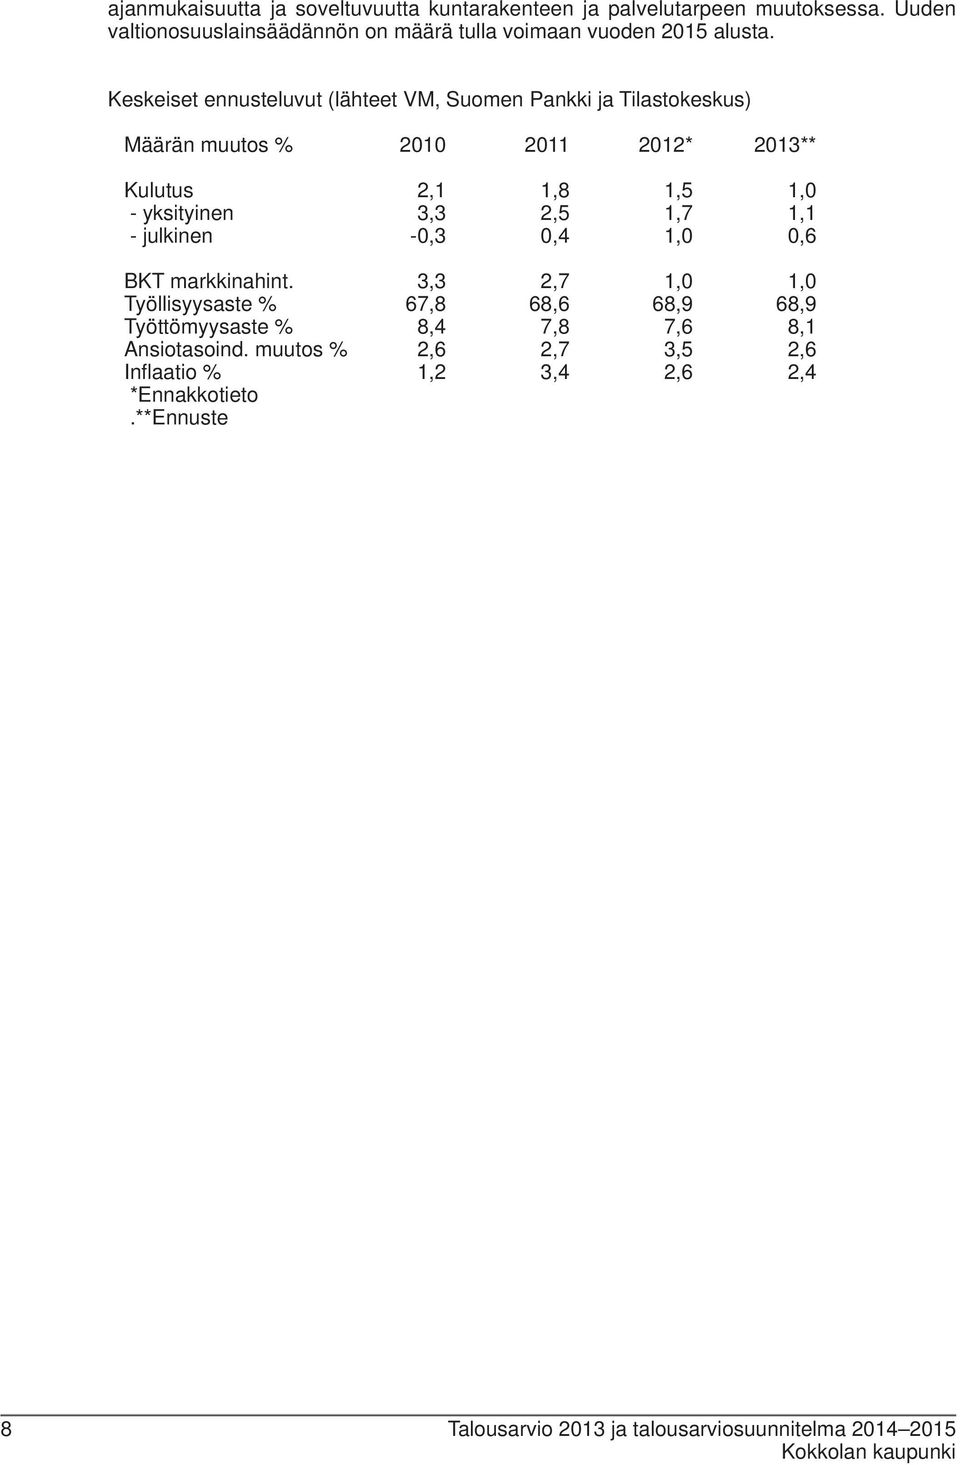 Keskeiset ennusteluvut (lähteet VM, Suomen Pankki ja Tilastokeskus) Määrän muutos % 2010 2011 2012* 2013** Kulutus 2,1 1,8 1,5 1,0 - yksityinen 3,3